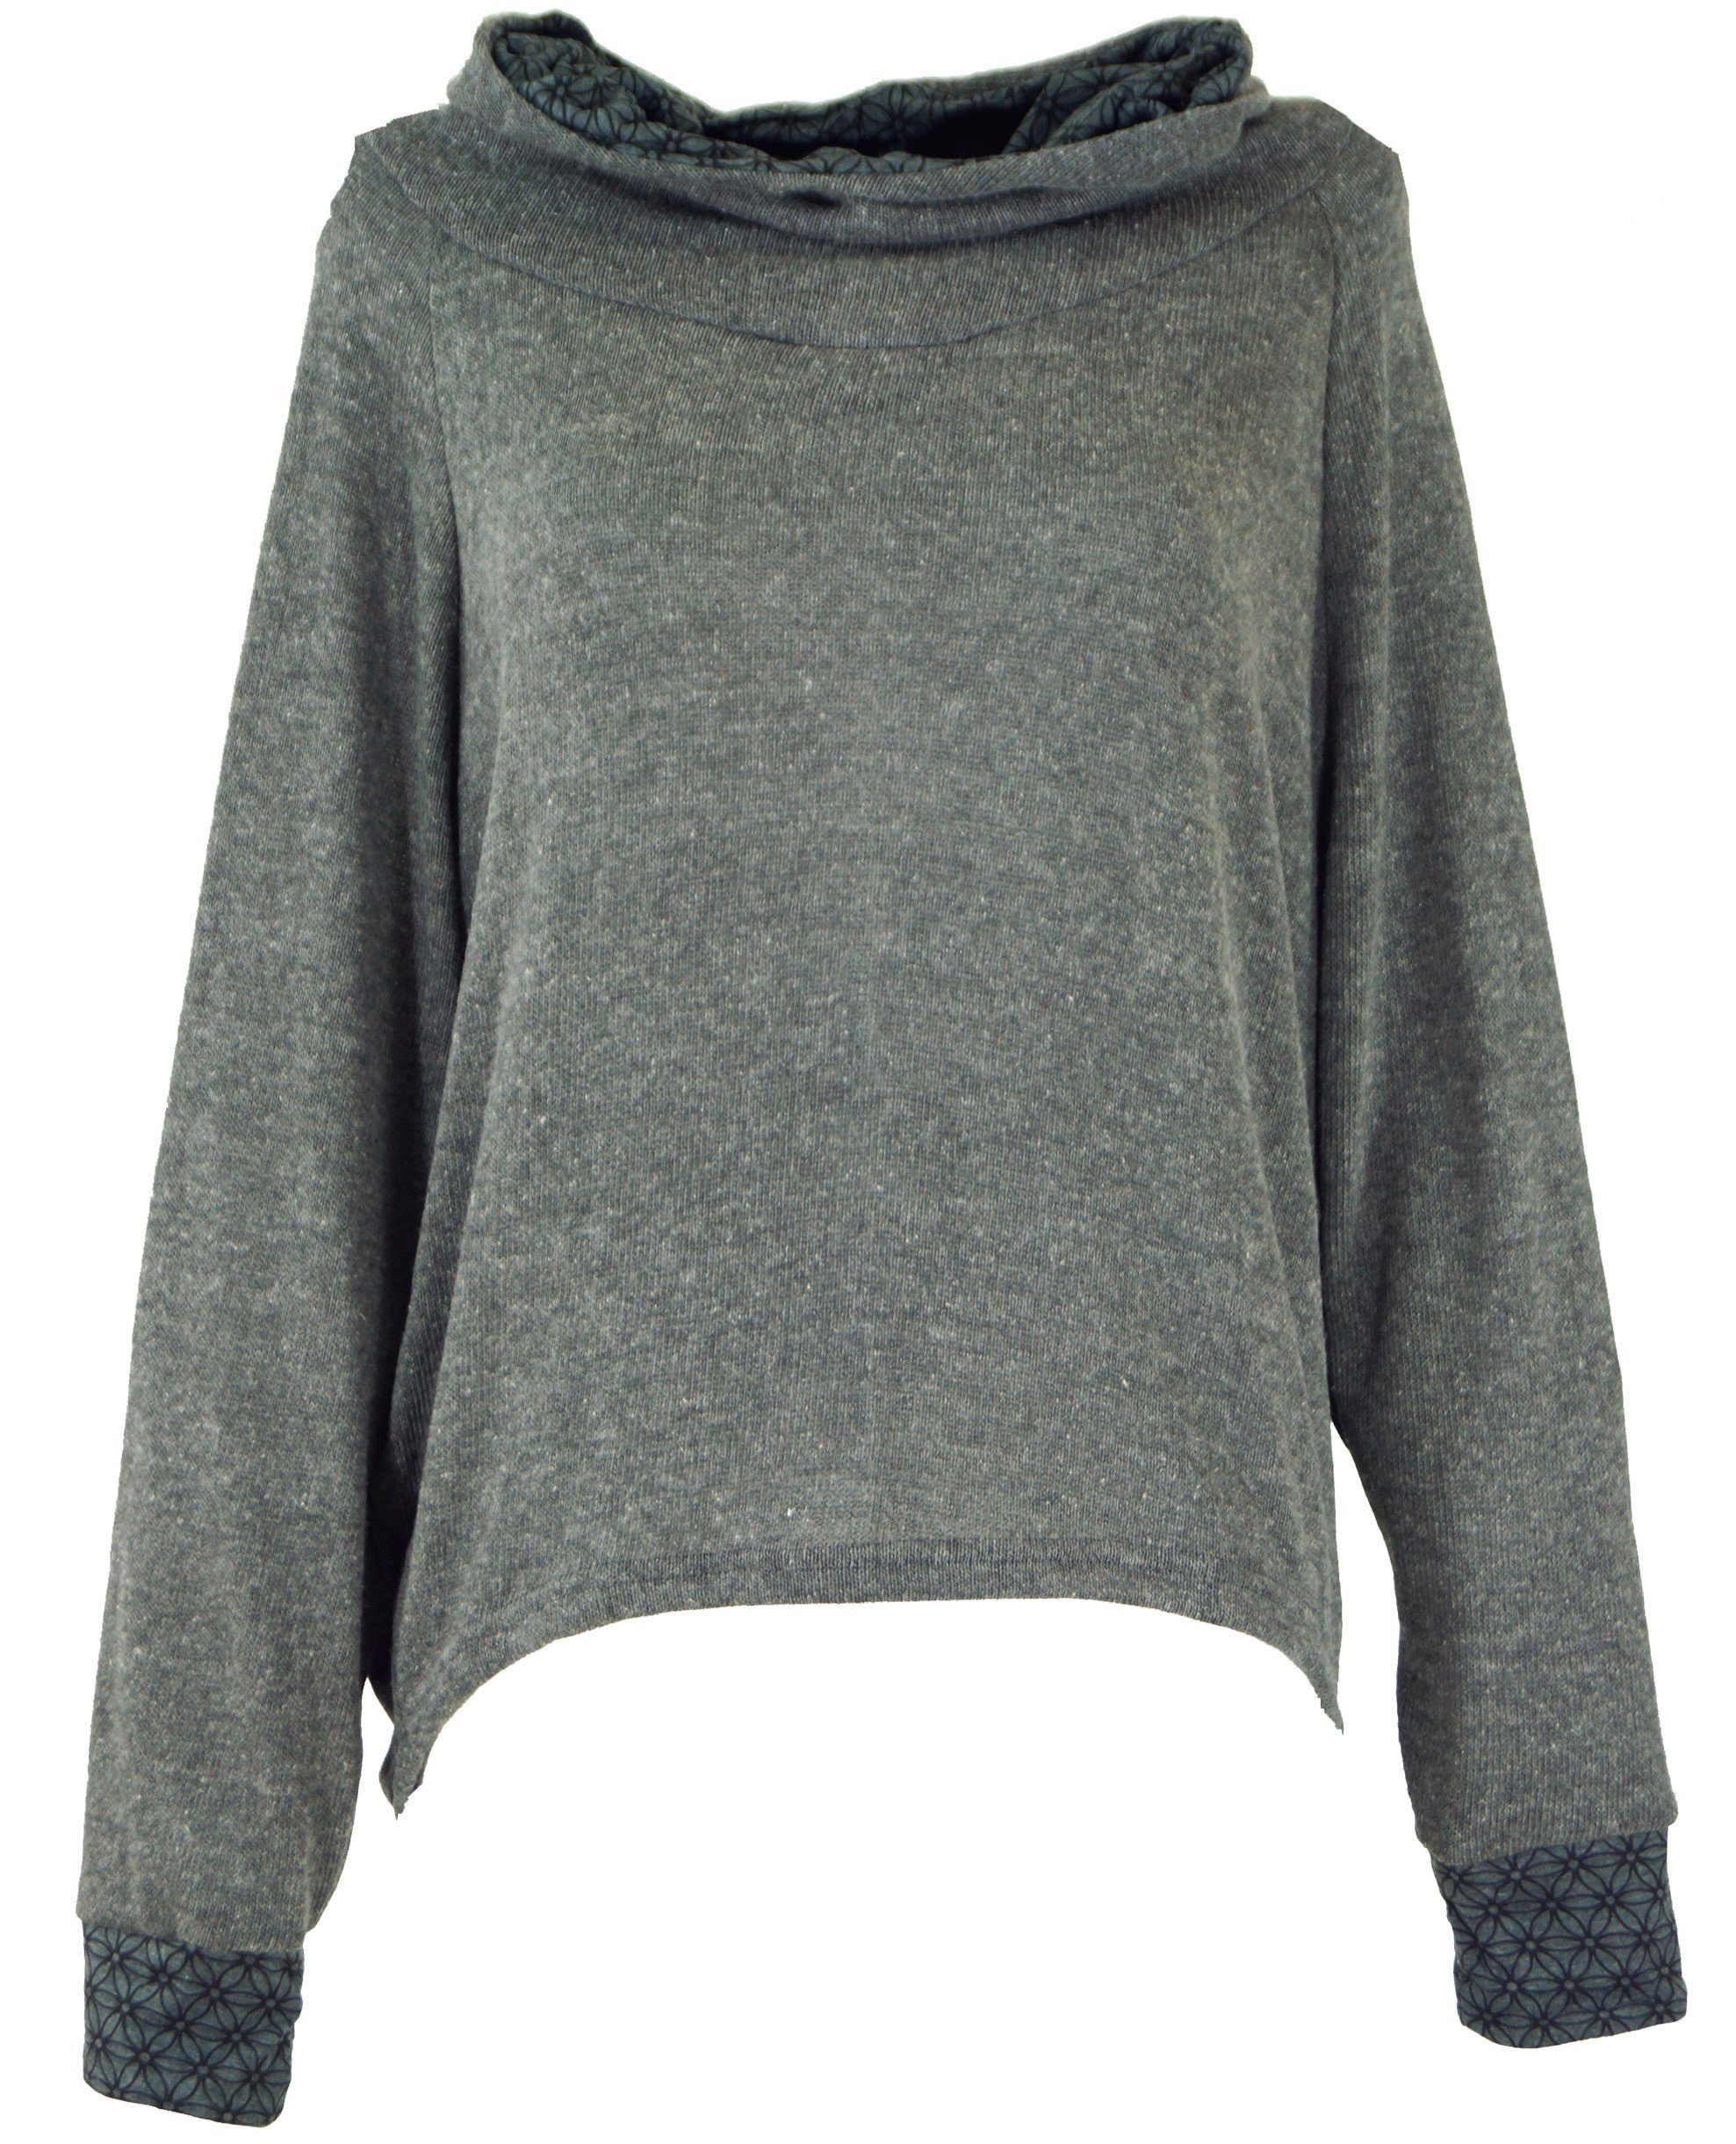 Guru-Shop Longsleeve Hoody, Sweatshirt, Bekleidung Pullover, alternative Kapuzenpullover -.. grau